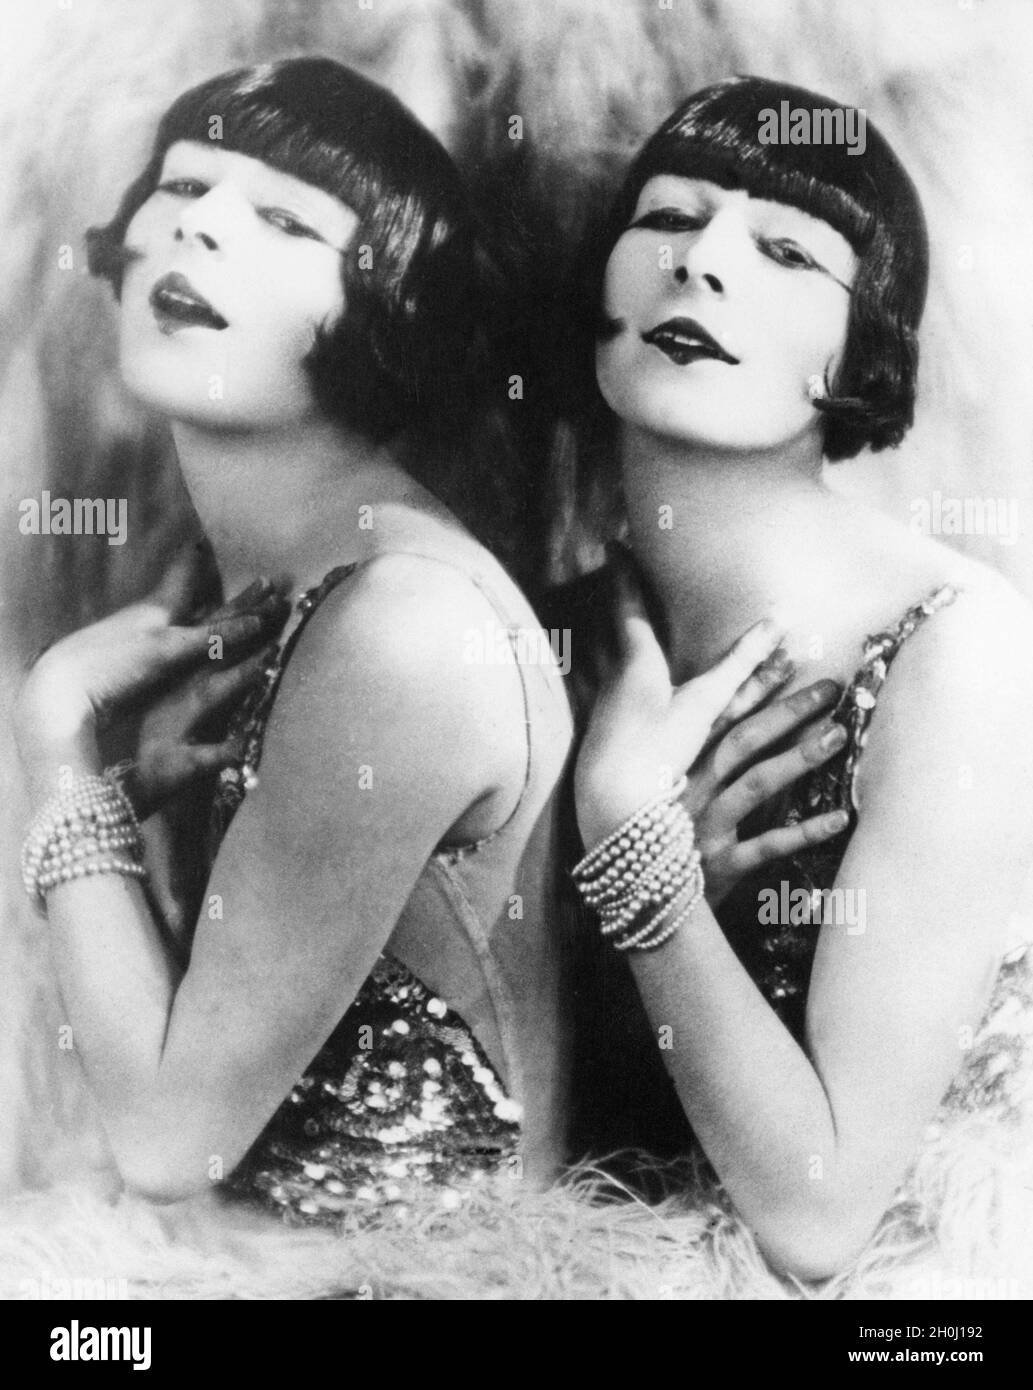 Imitazione delle Suore Dolly, ragazze americane revue, da parte dei gemelli Rowy. I due norvegesi apparvero anche a Parigi nel 1928 come sosia femminile delle Suore Dolly. [traduzione automatizzata] Foto Stock